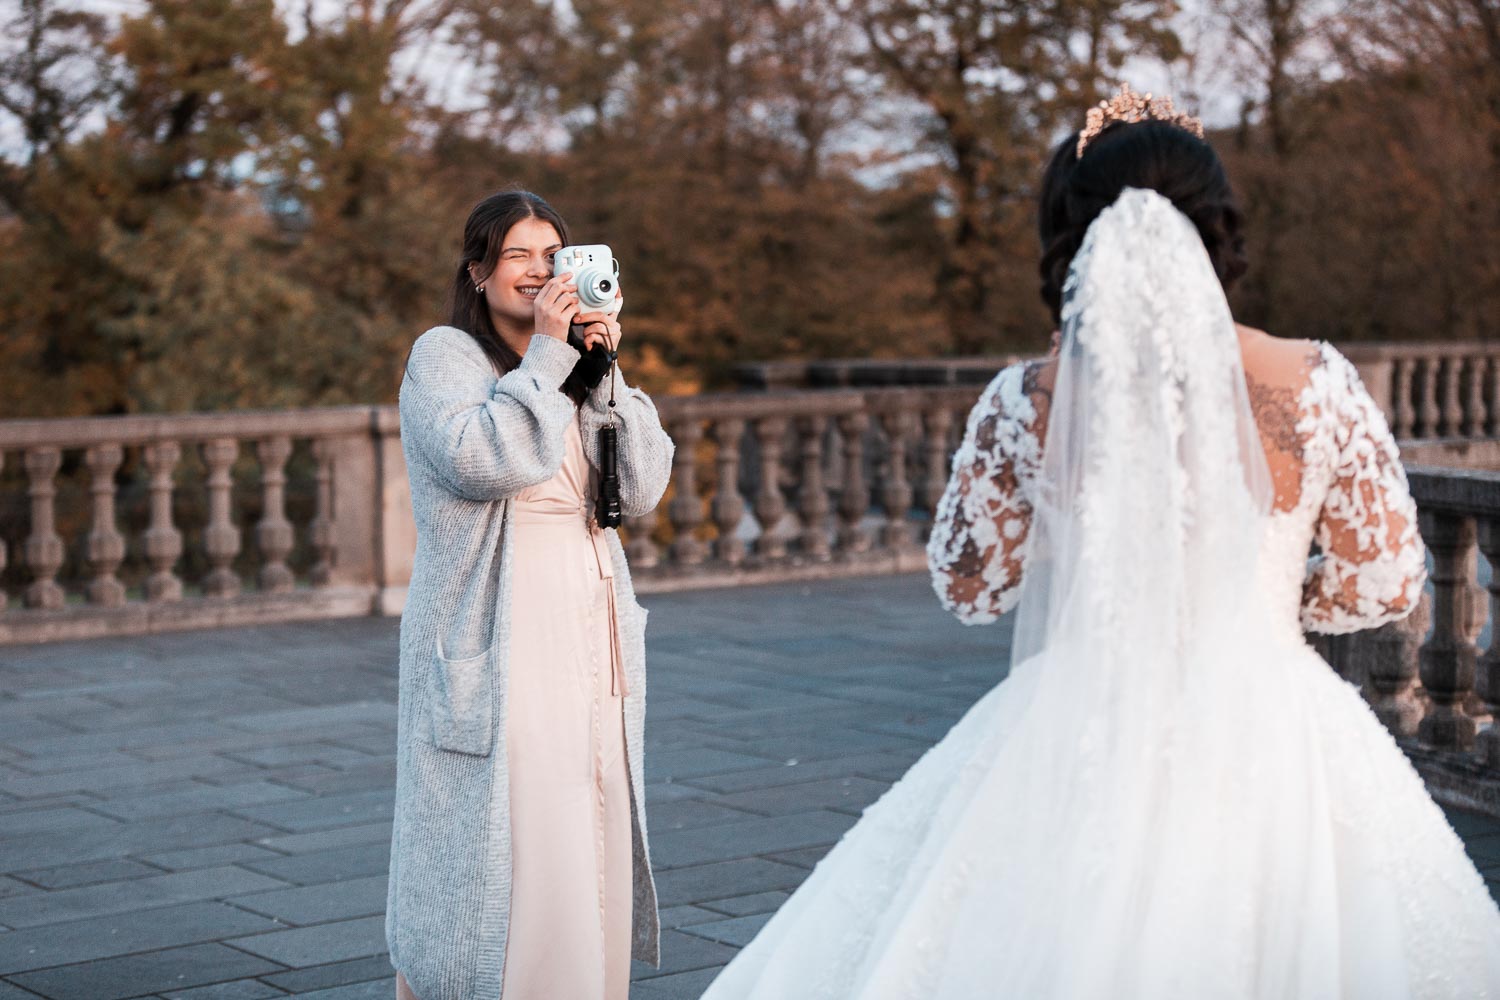 BridesMaids fotografiert die Braut mit ihrer Instax Kamera während der Hochzeitsfotograf die Braut von hinten und die BridesMaids von vorne ablichtet. Die Braut wird von den Brautjungfern mit ihrer Instax-Kamera fotografiert, während der Hochzeitsfotograf die Braut von hinten und die Brautjungfern von vorne ablichtet.